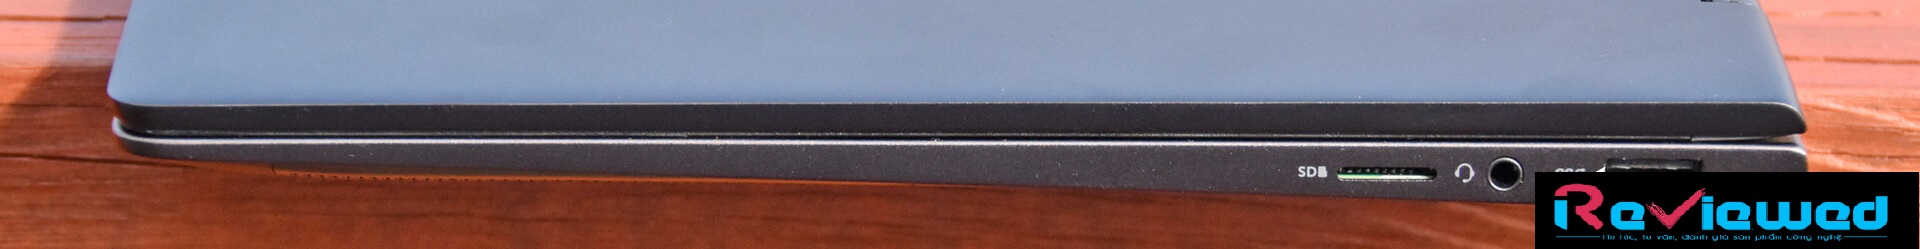 Đánh giá Dell Inspiron 7390 2 in 1 Black Edition: Nâng cấp hợp lý, Chuyên trang tư vấn laptop